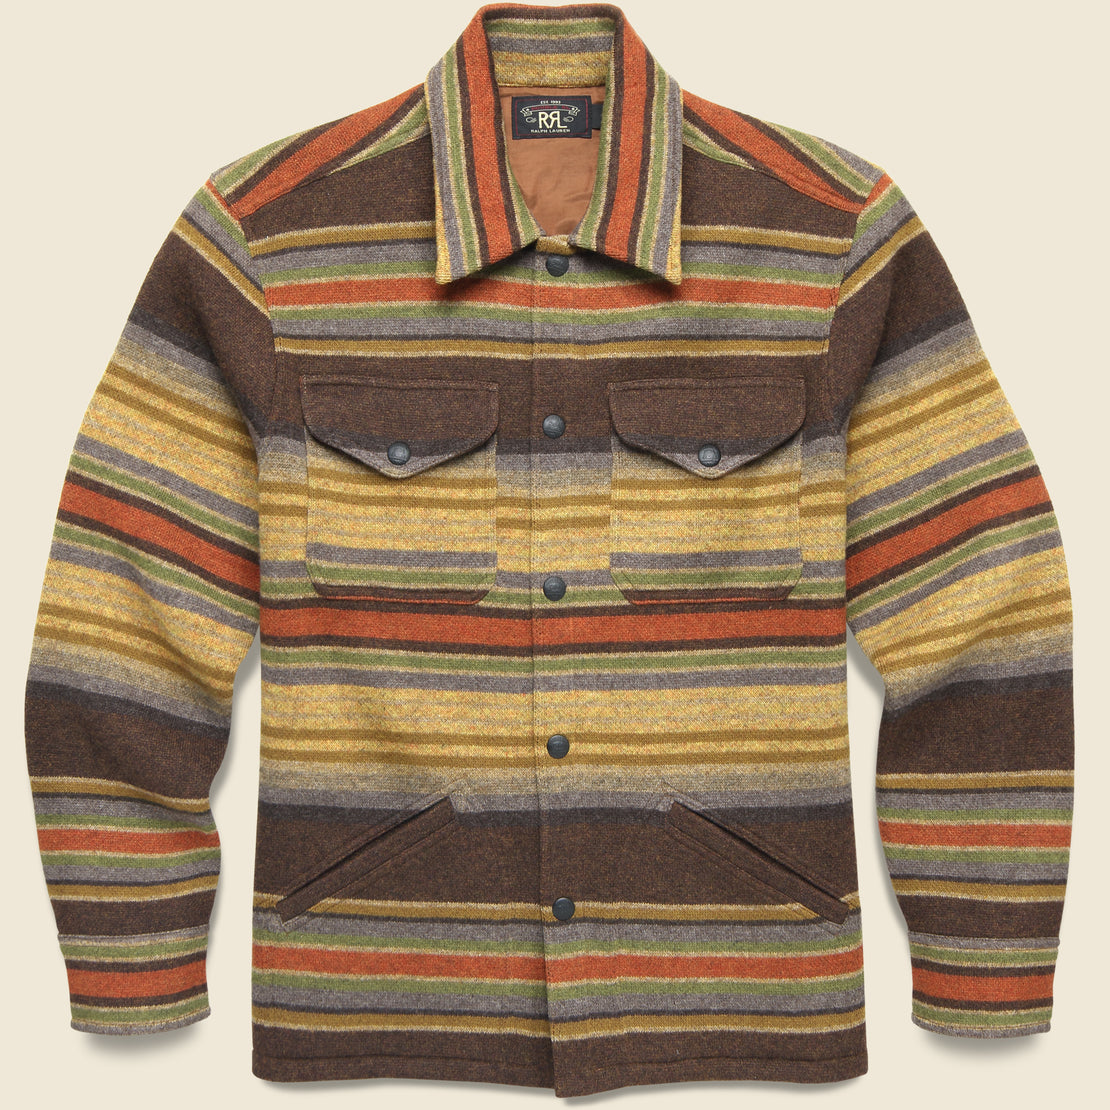 RRL Striped Jacquard Sweater Shirt - Multi